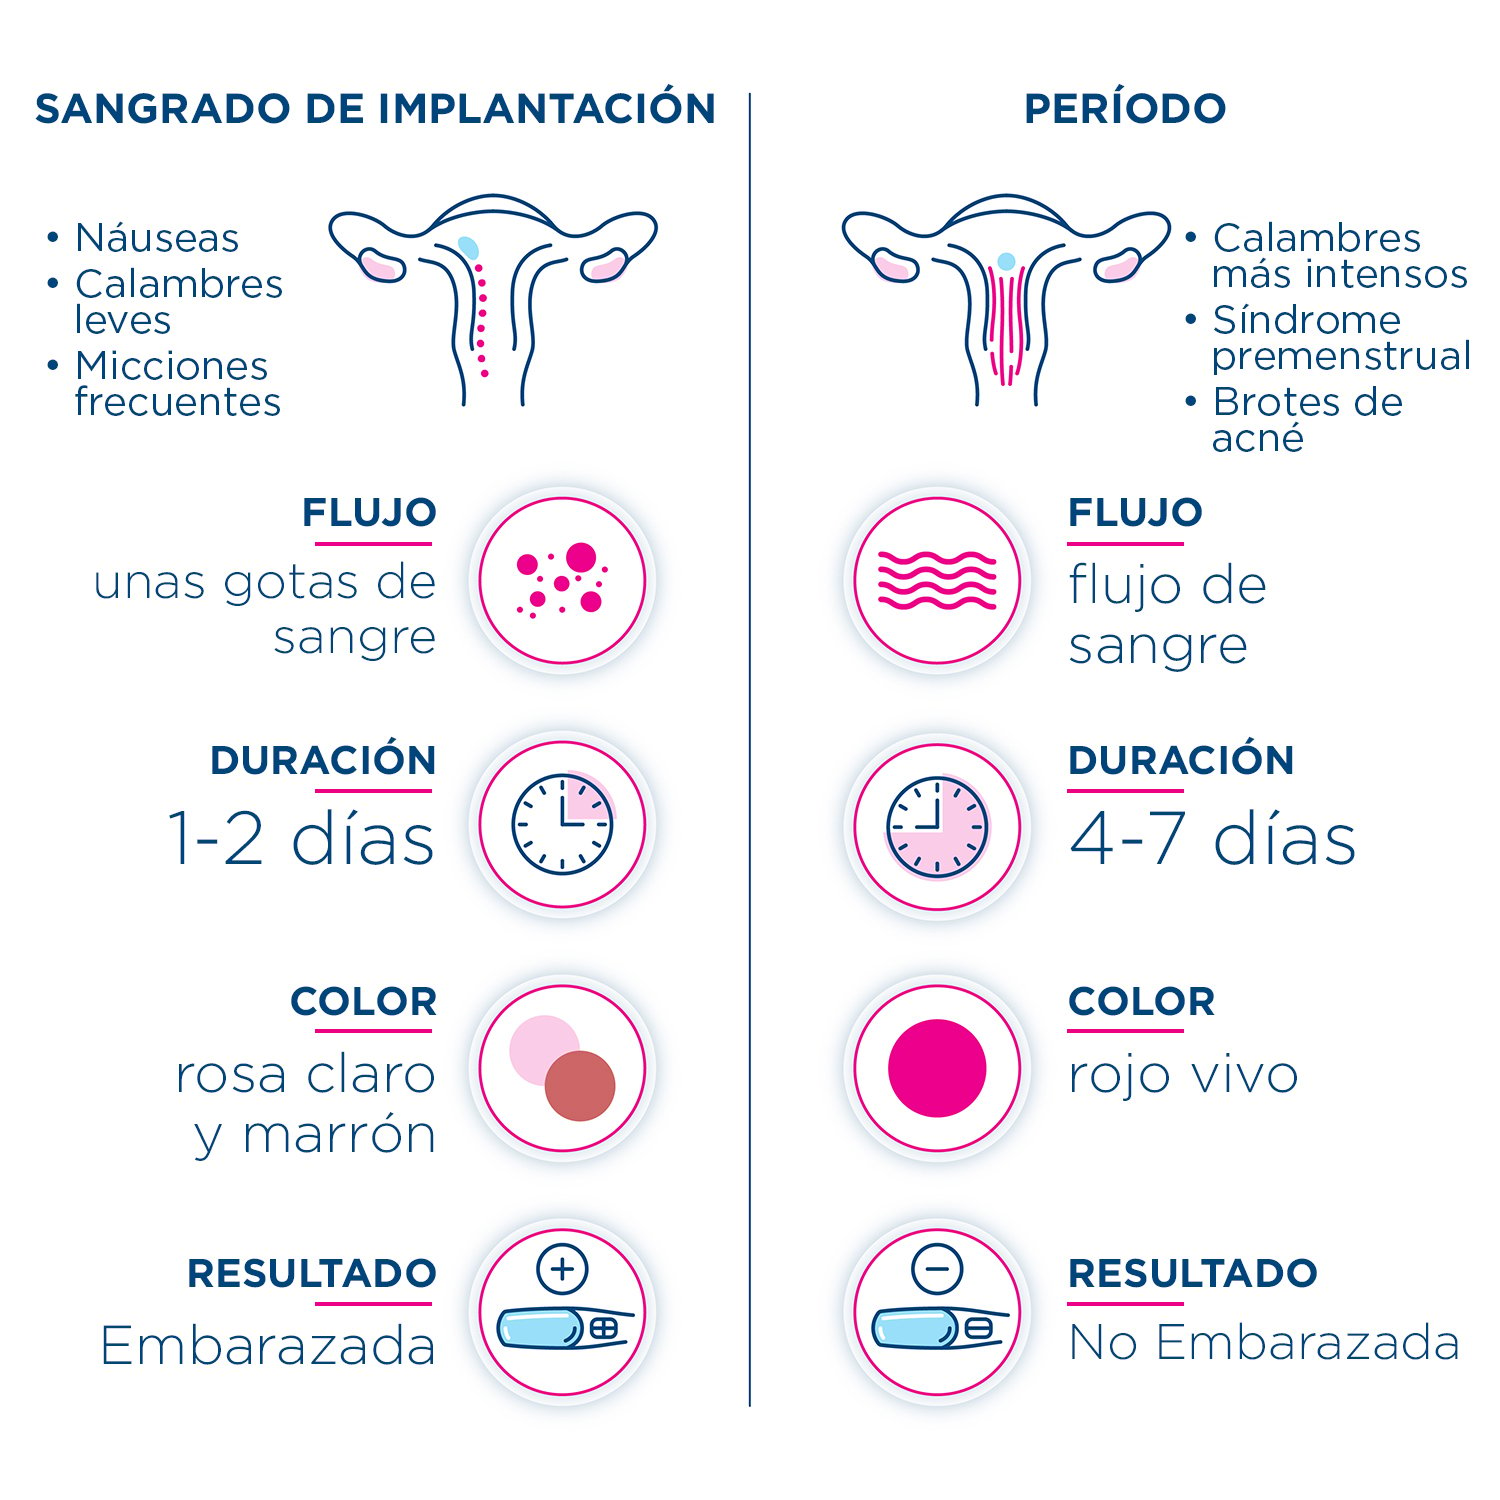 Infografía que compara los signos y síntomas para diferenciar el sangrado de implantación y su período.